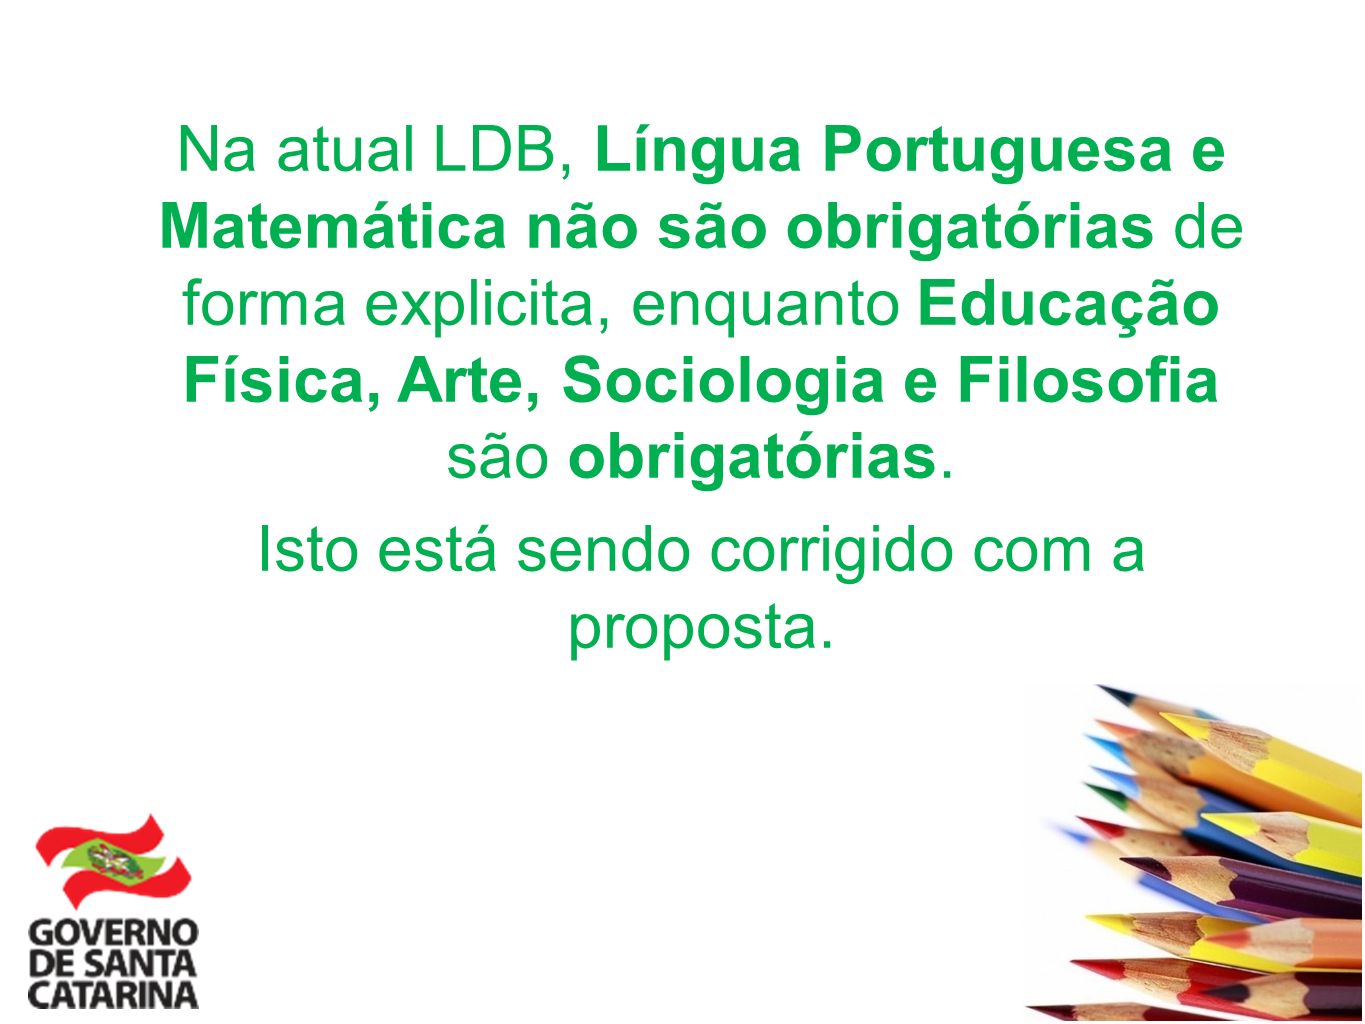 Na atual LDB, Língua Portuguesa e Matemática não são obrigatórias de forma explicita, enquanto Educação Física, Arte, Sociologia e Filosofia são obrigatórias.